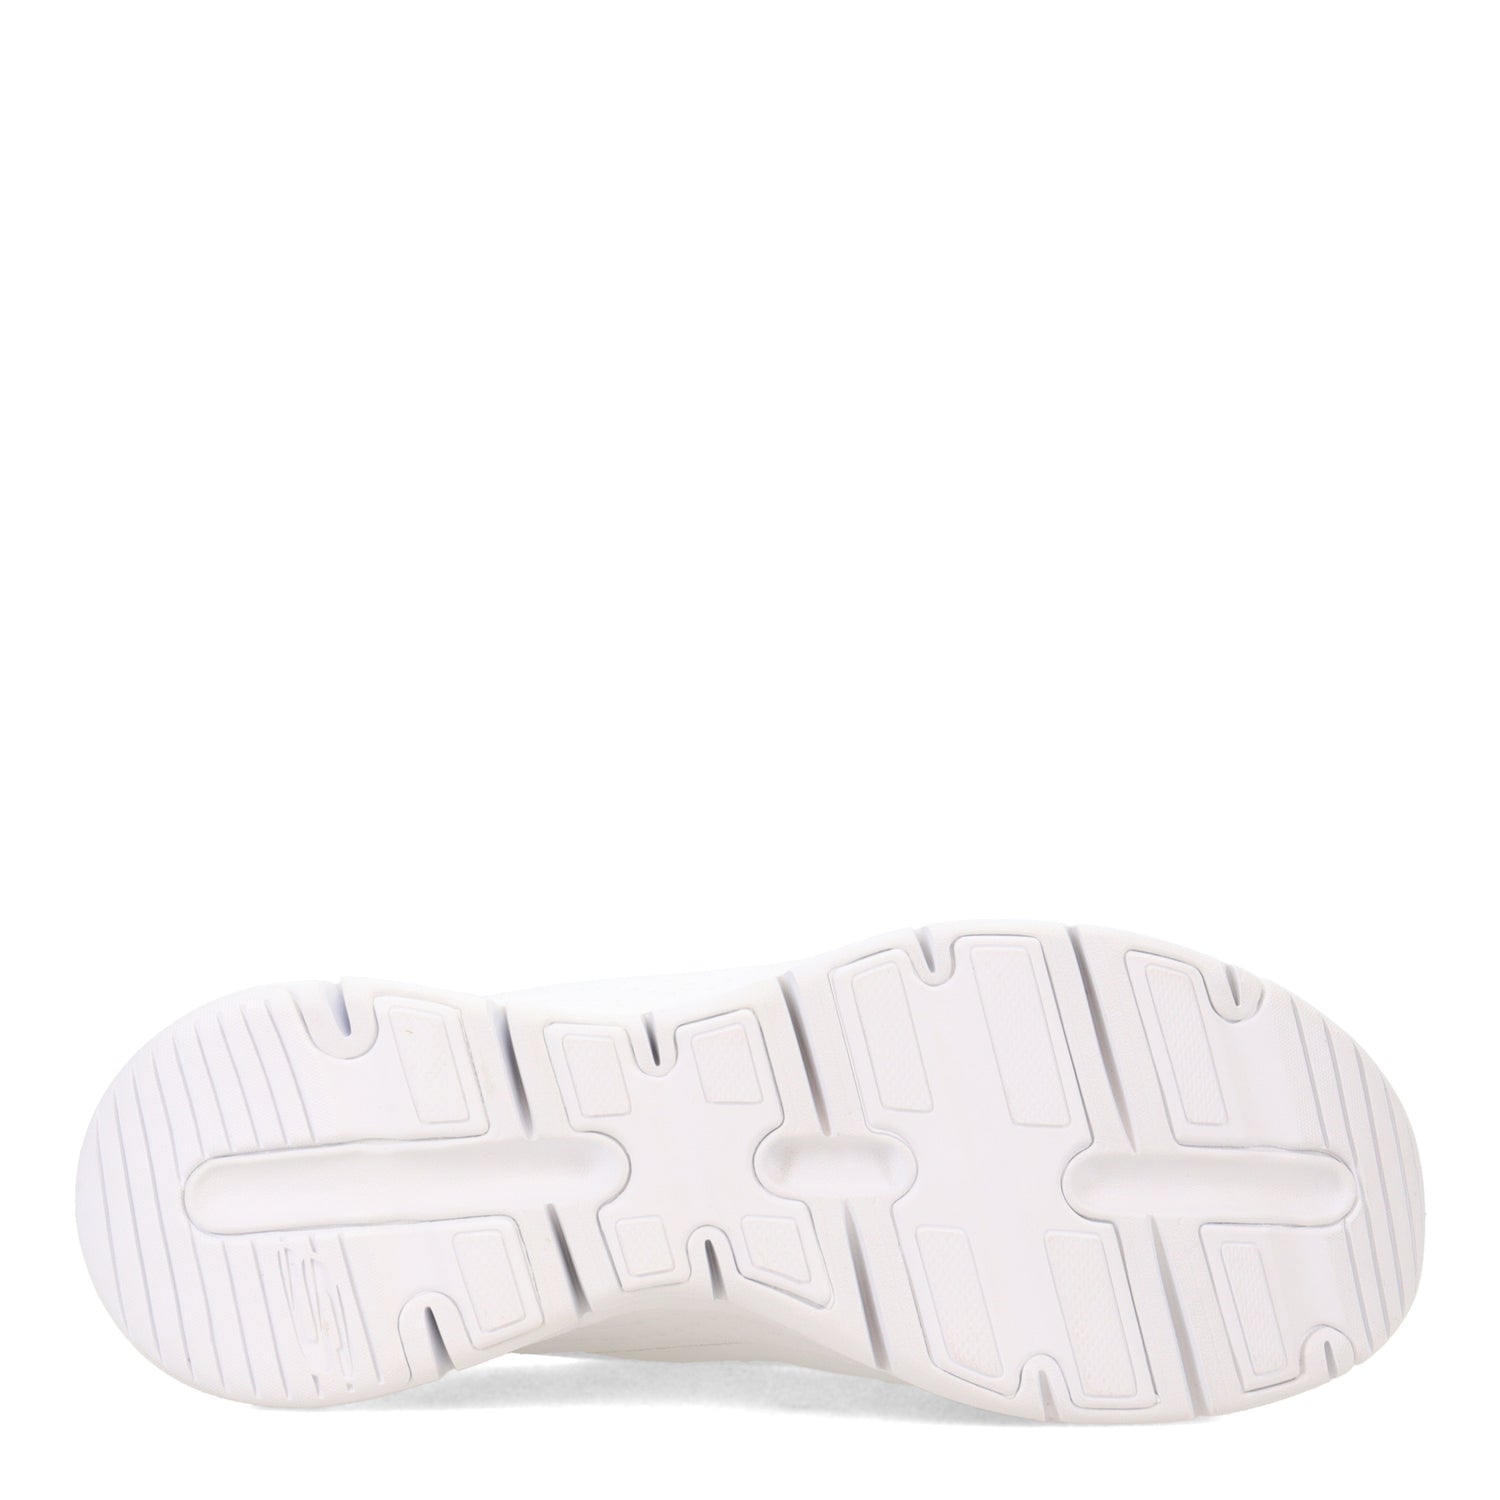 Peltz Shoes  Women's Skechers Arch Fit - Blessful Me Slip-On Sneaker WHITE SILVER 149419-WSL